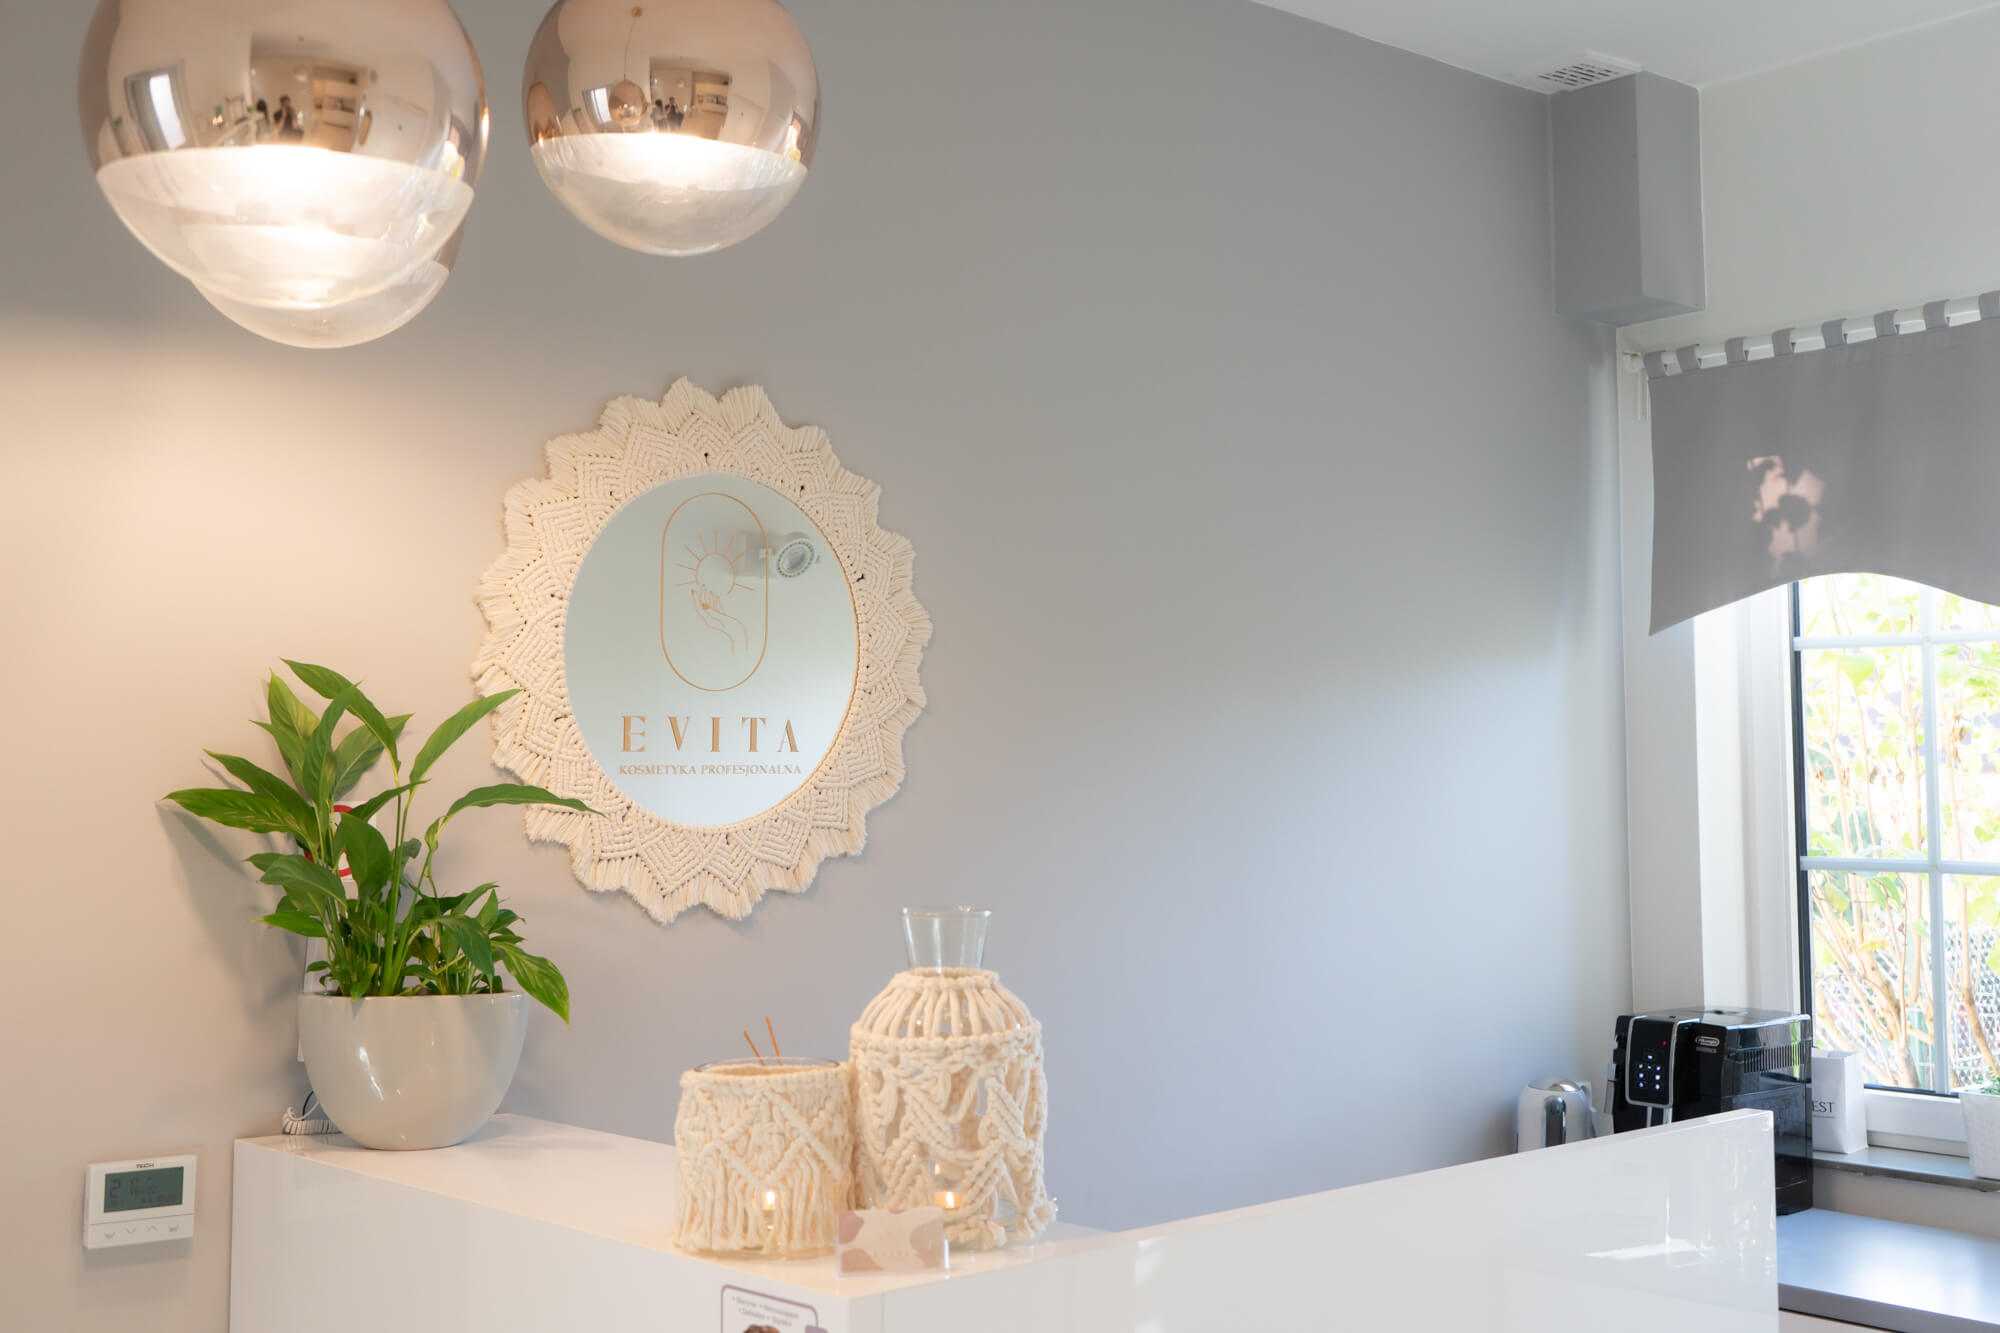 Recepcja w Salonie Kosmetyki Profesjonalnej „Evita” z makramowym lustrem ze złotym logo, lampionami i złotymi lampami